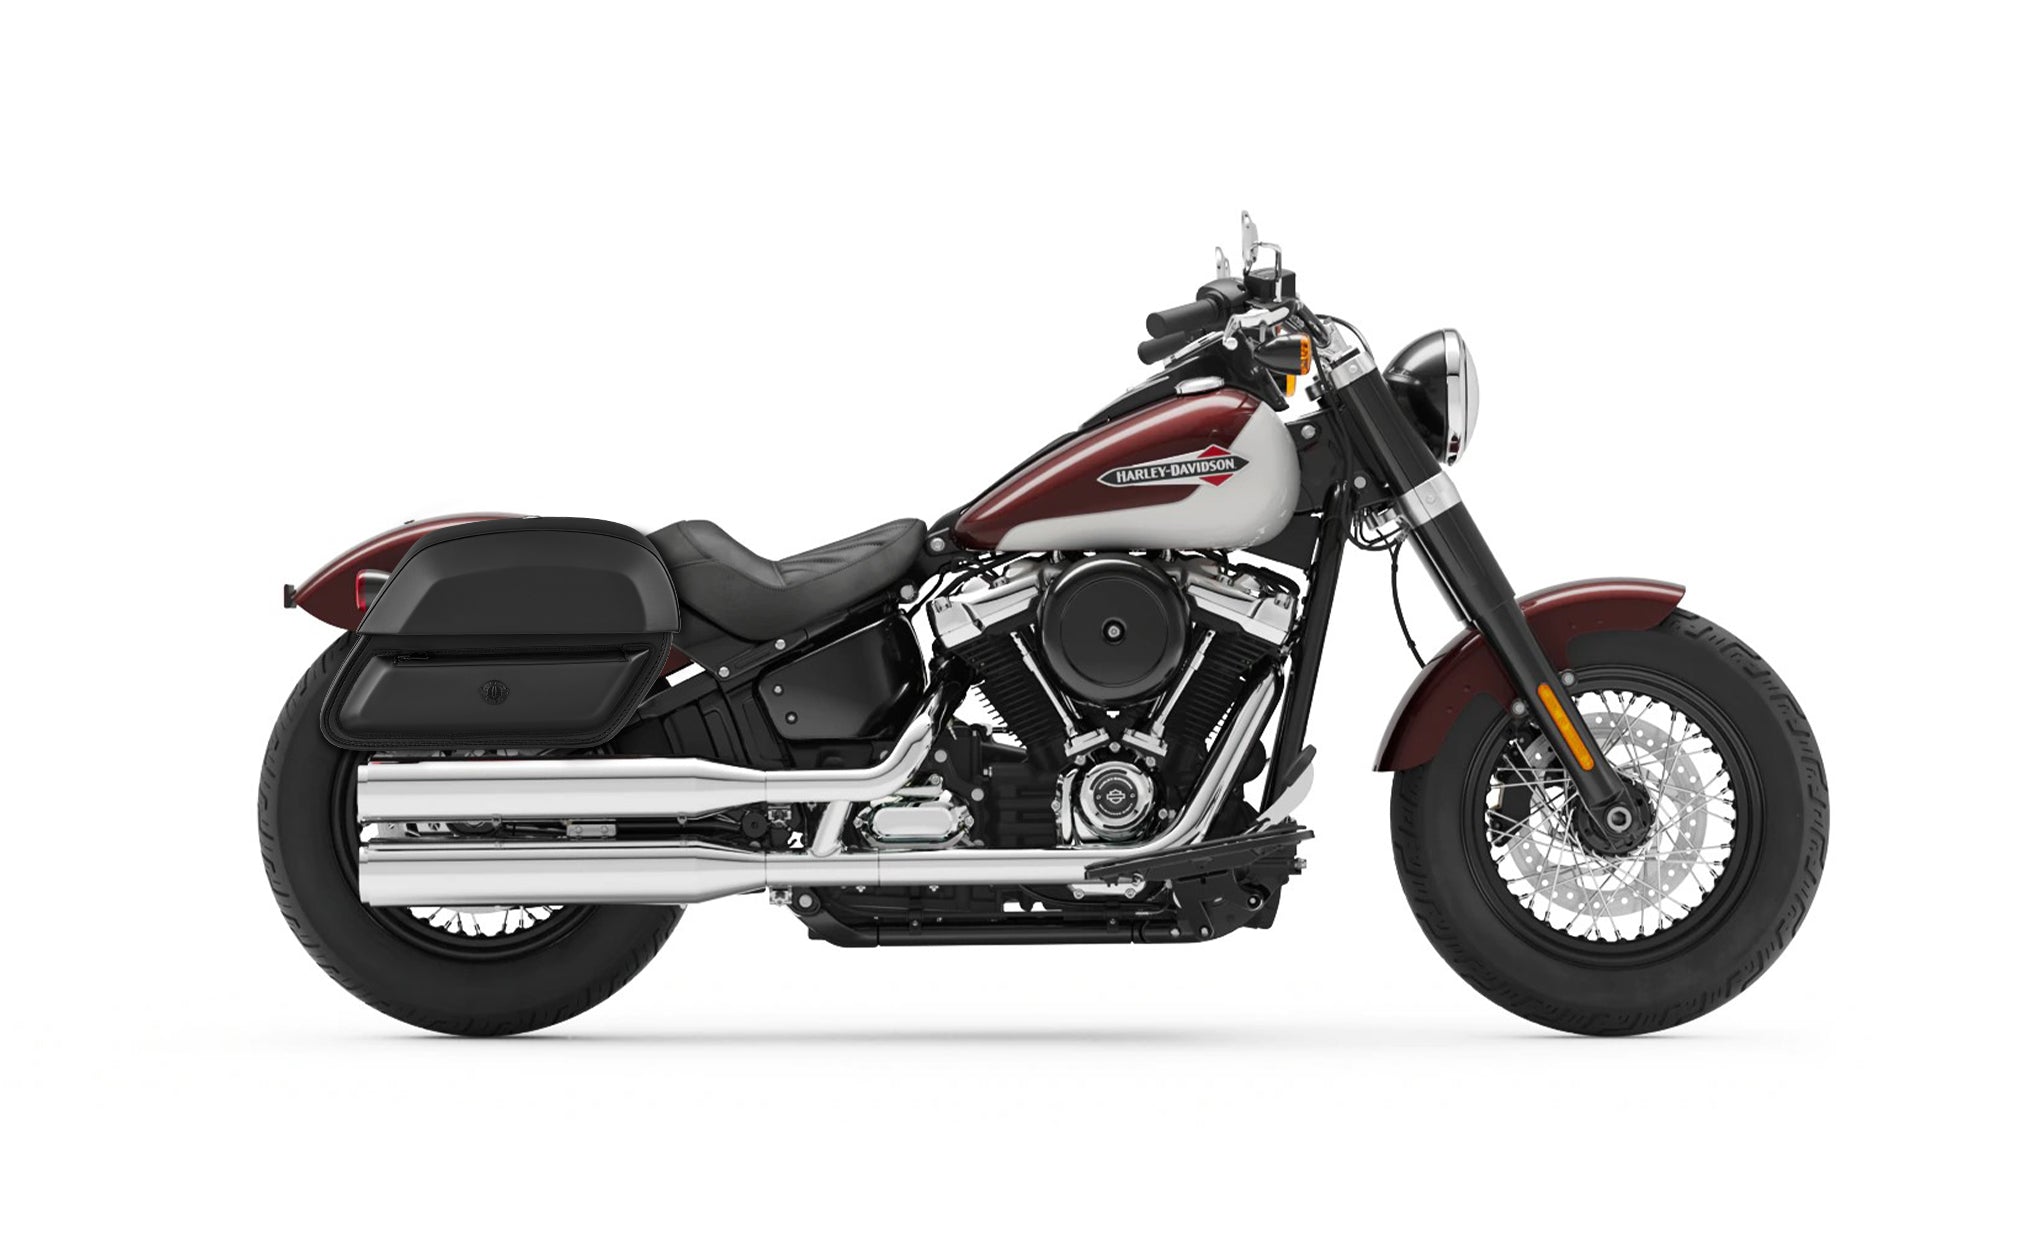 28L - Pantheon Medium Quick-Mount Motorcycle Saddlebags For Harley Softail Slim FLSL @expand